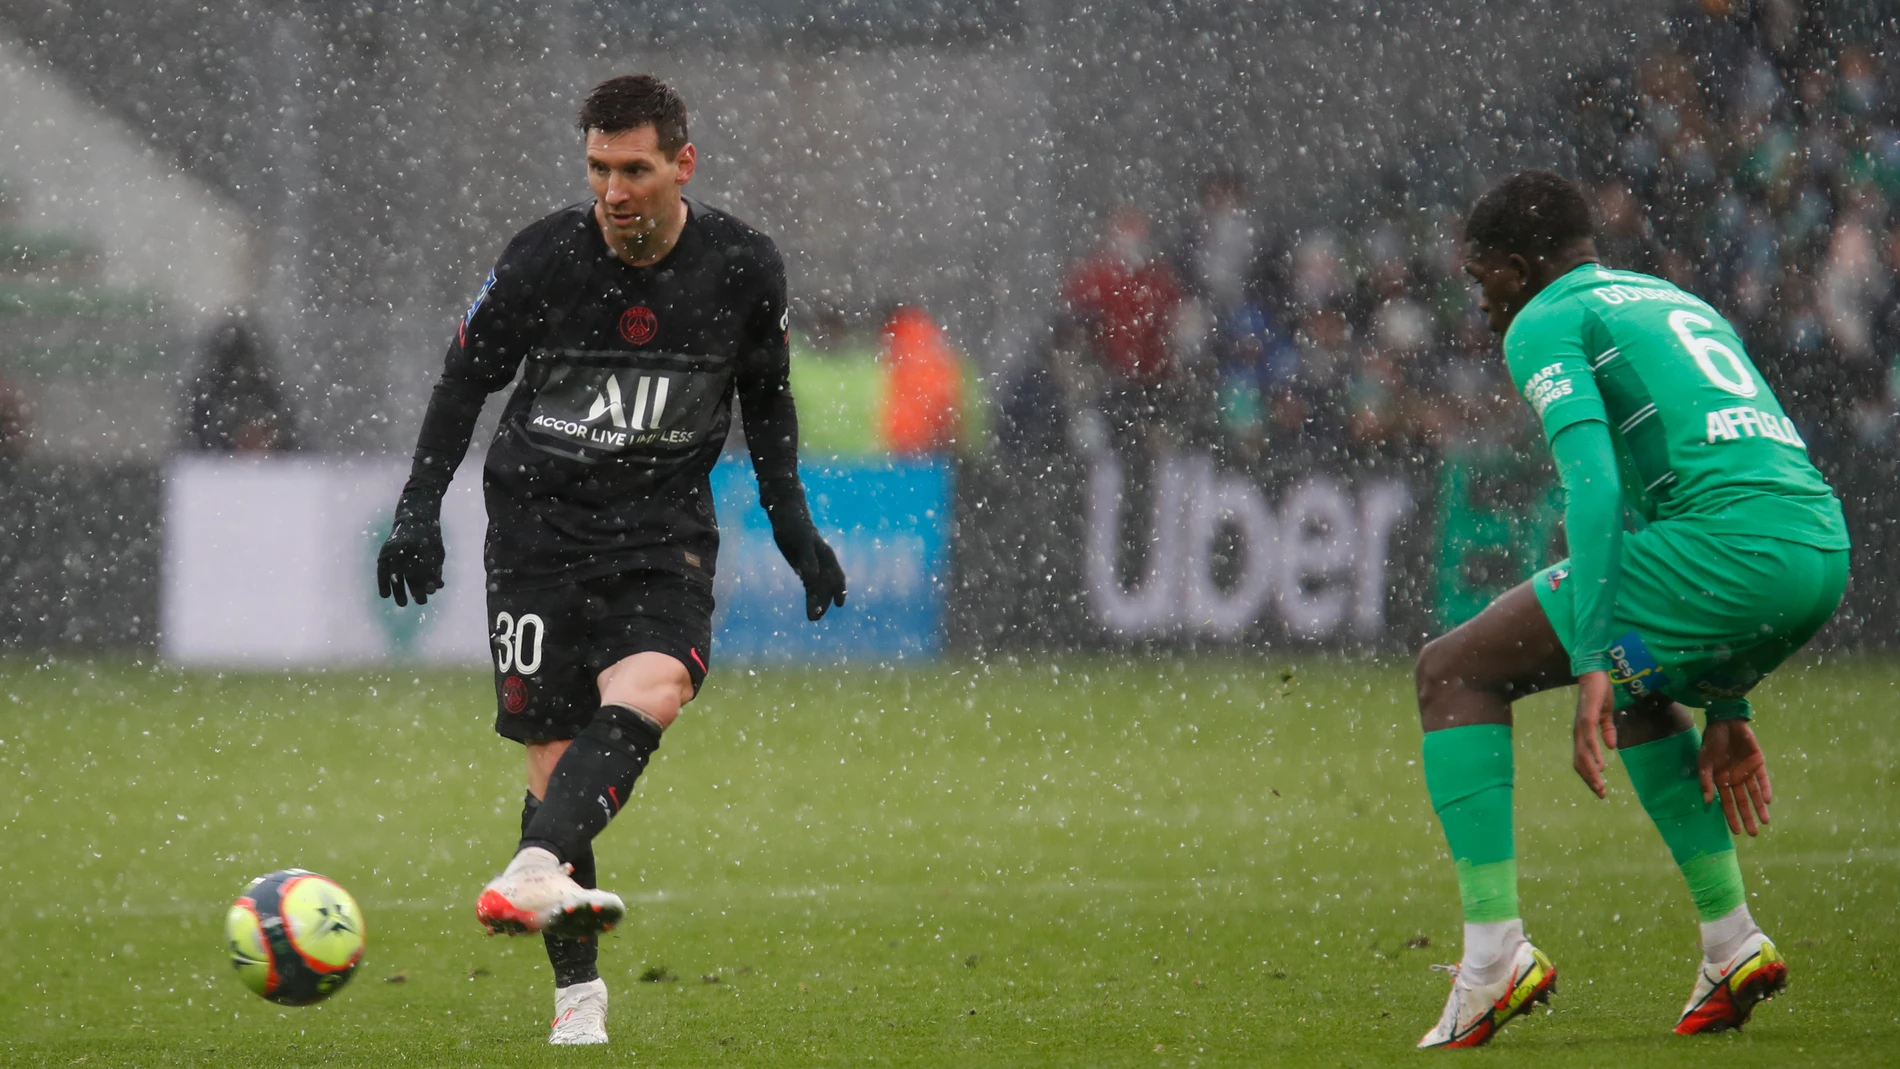 Leo Messi dio tres asistencias en la victoria del PSG contra el Saint-Ètienne (1-3).